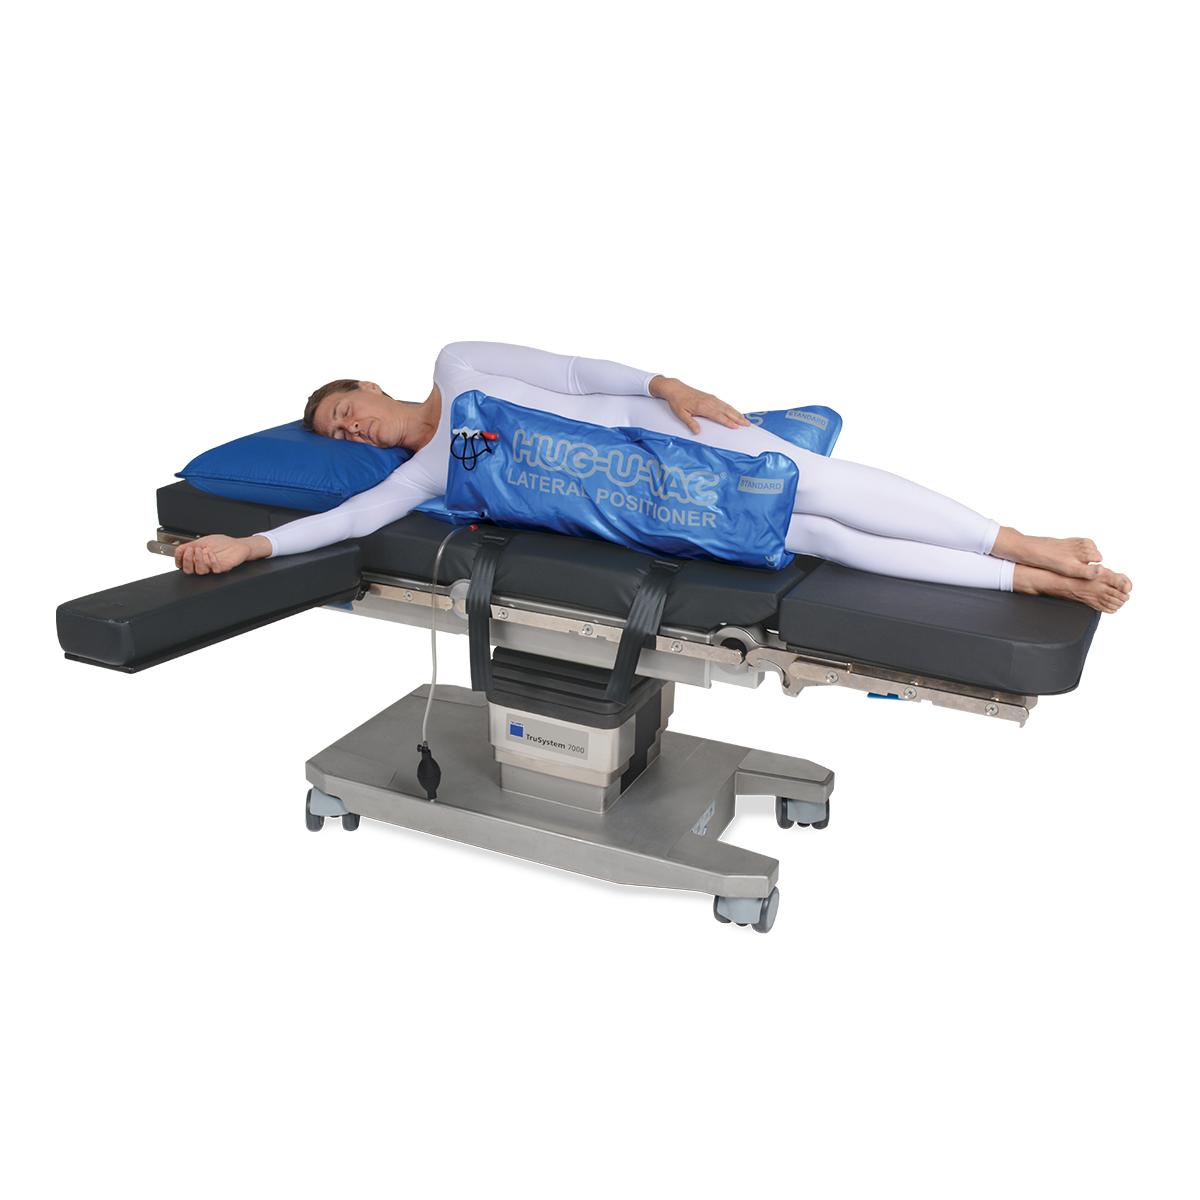 Allen® Hug-U-Vac® Lateral Positioner con paziente in posizione laterale